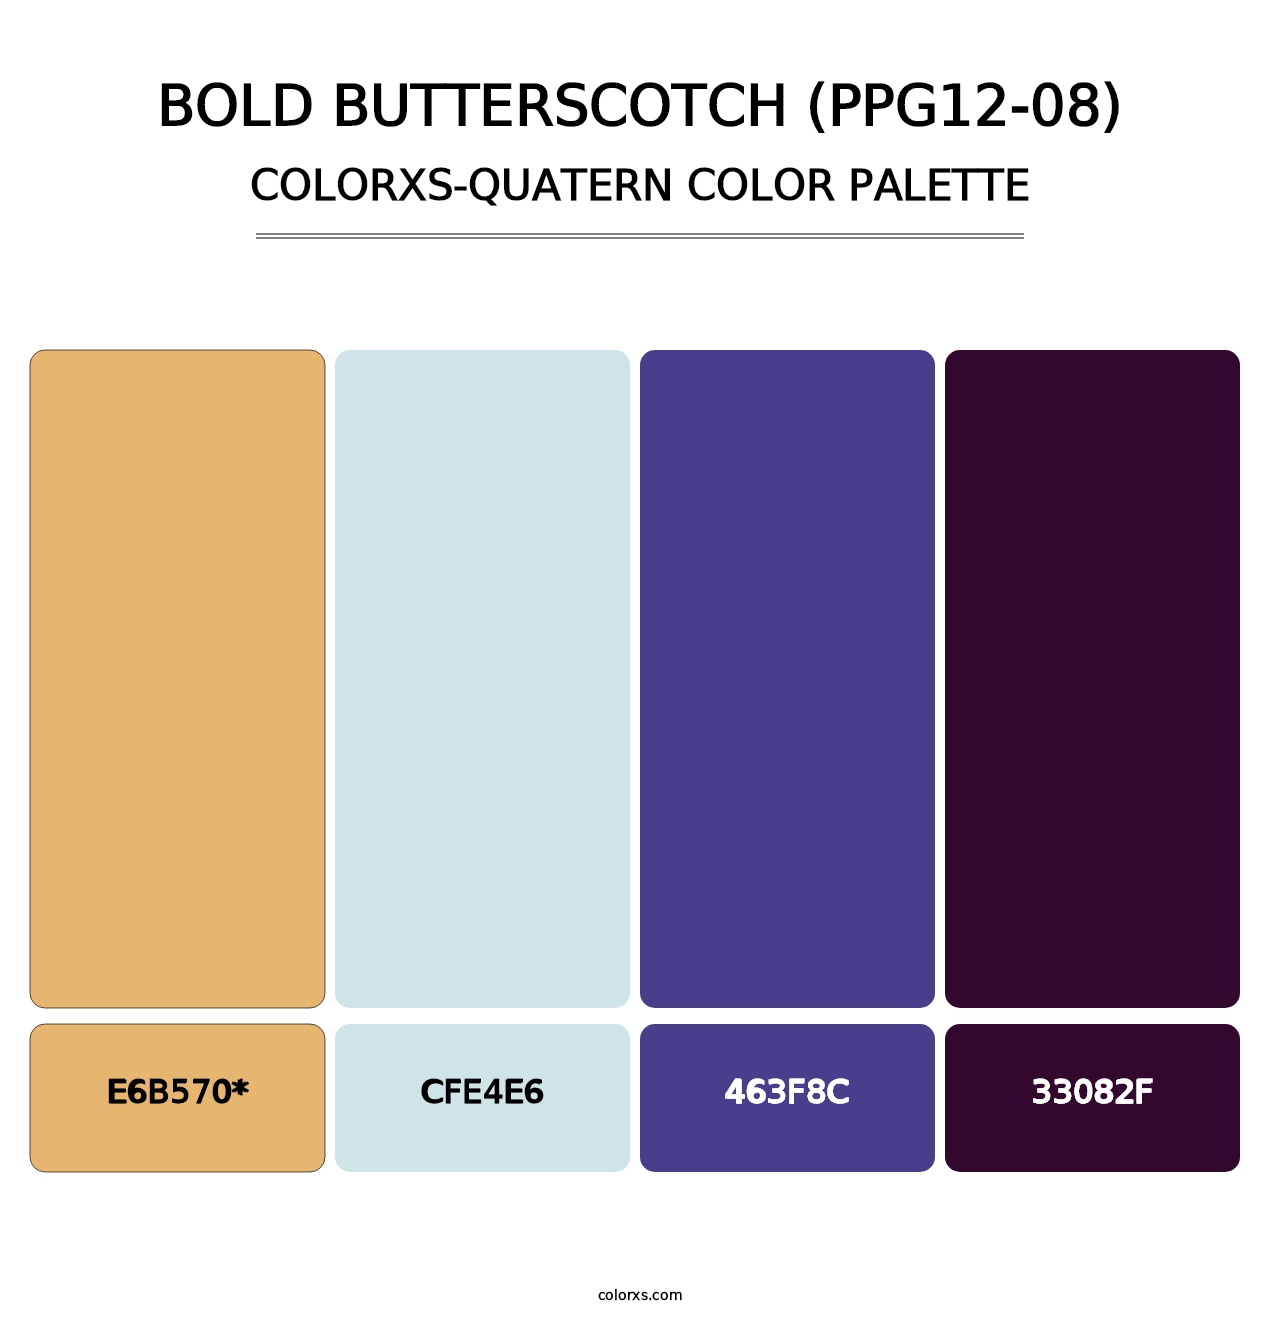 Bold Butterscotch (PPG12-08) - Colorxs Quatern Palette